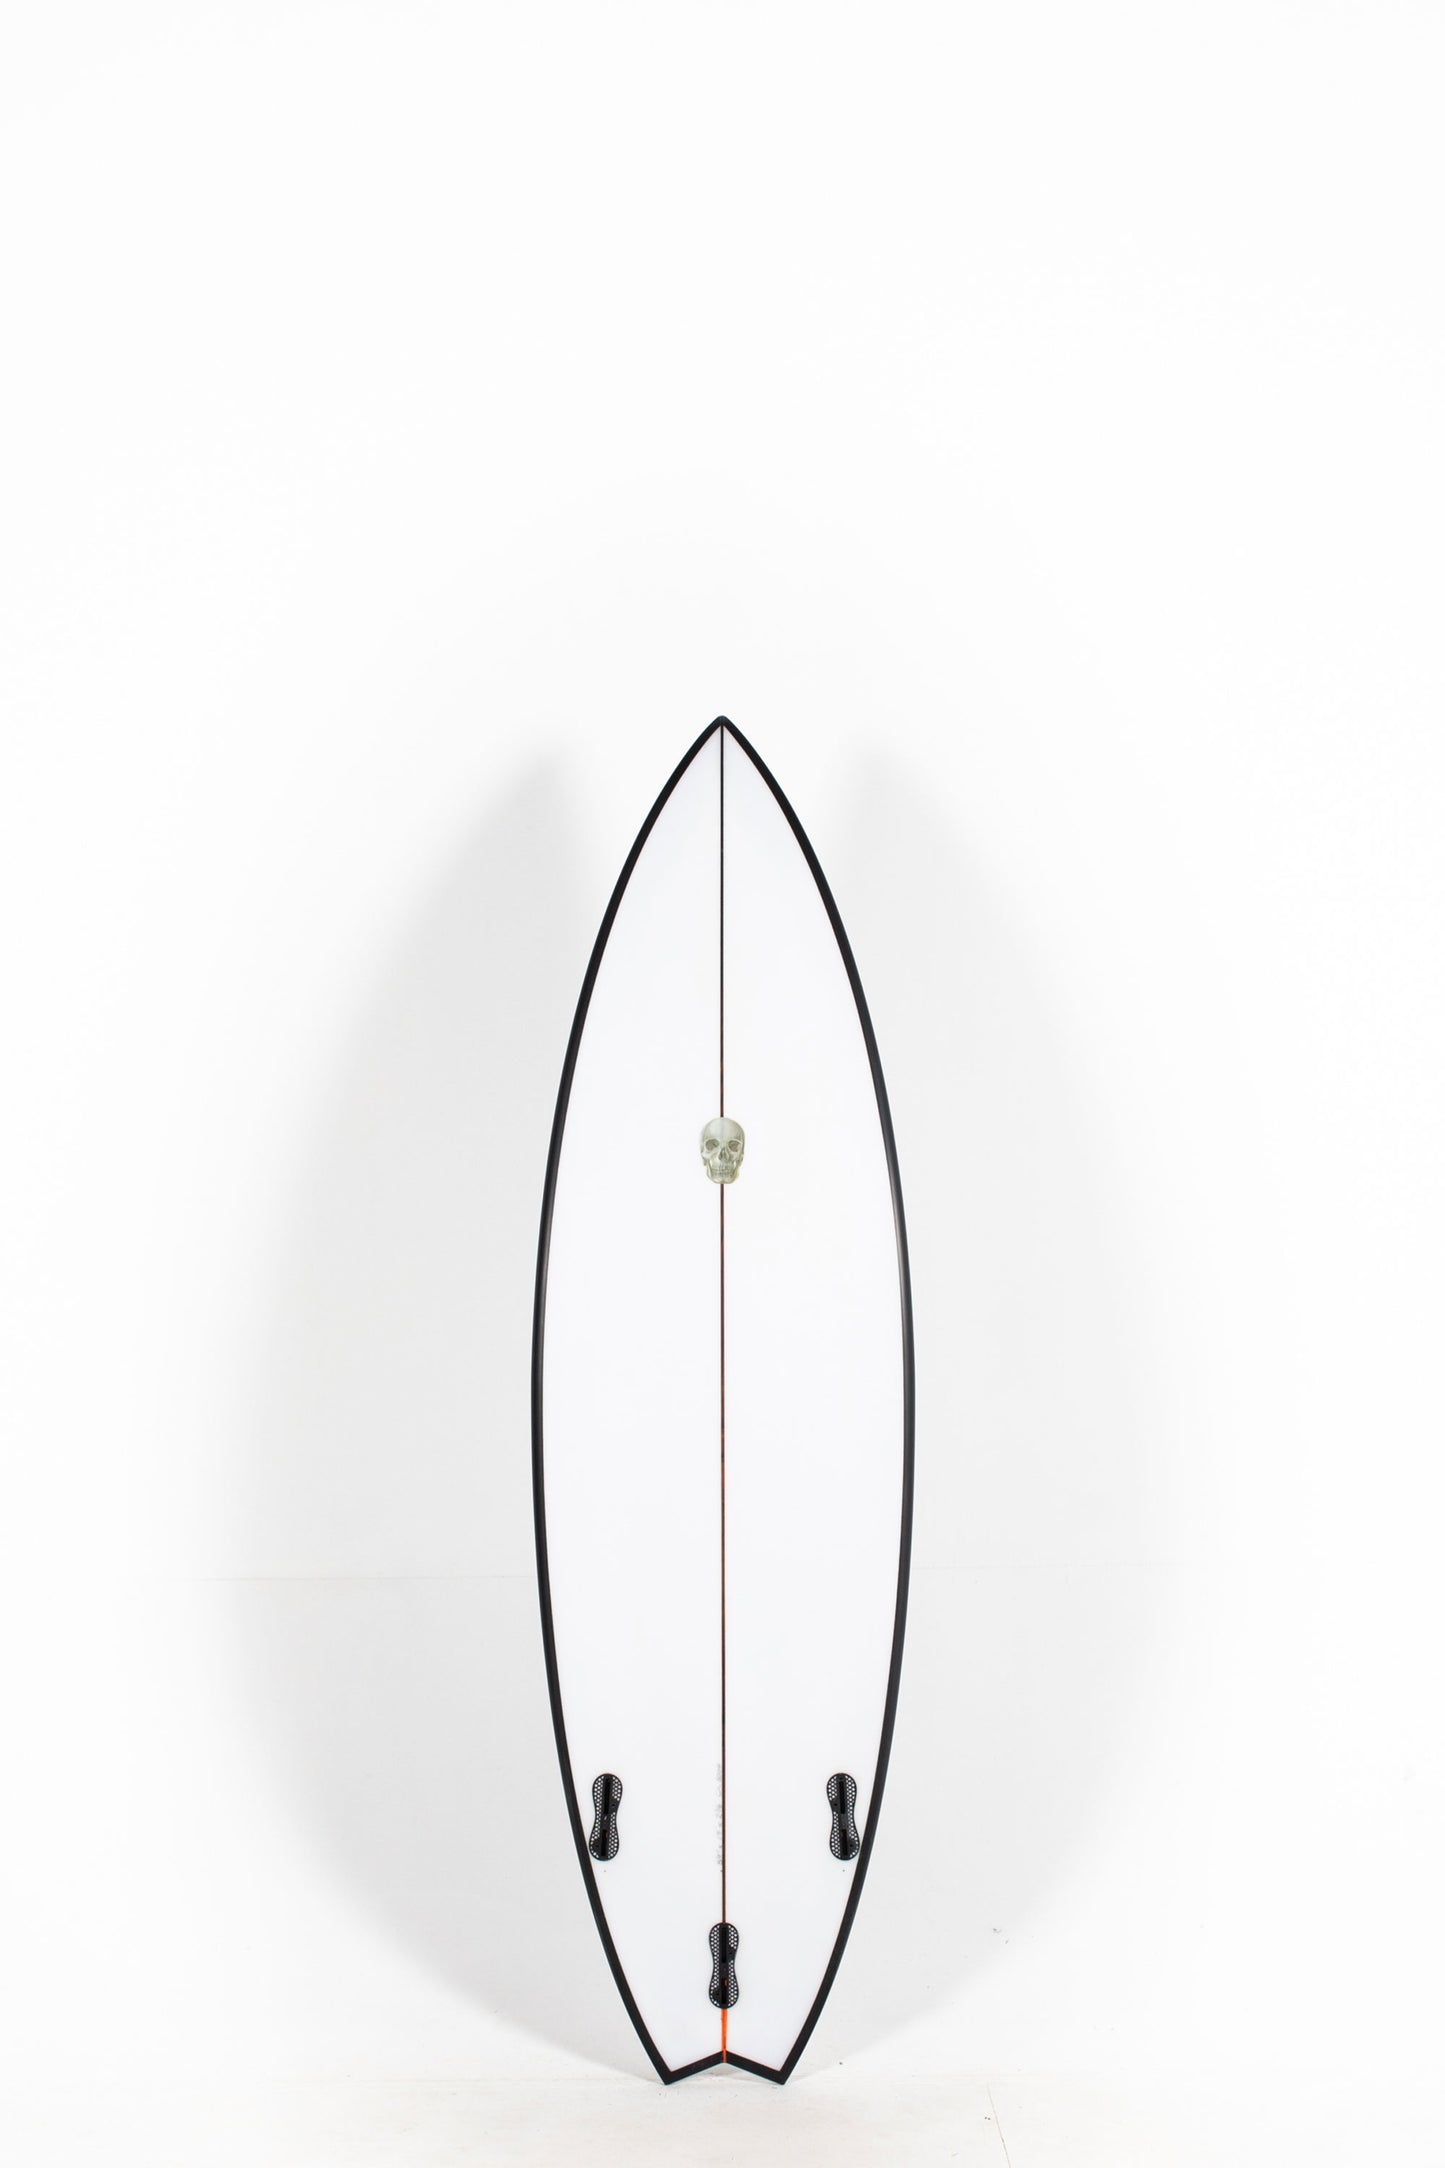 Pukas Surf Shop - Christenson Surfboards - OP3 - 5'9" x 19 x 2 3/8 x 27.10L - CX05004